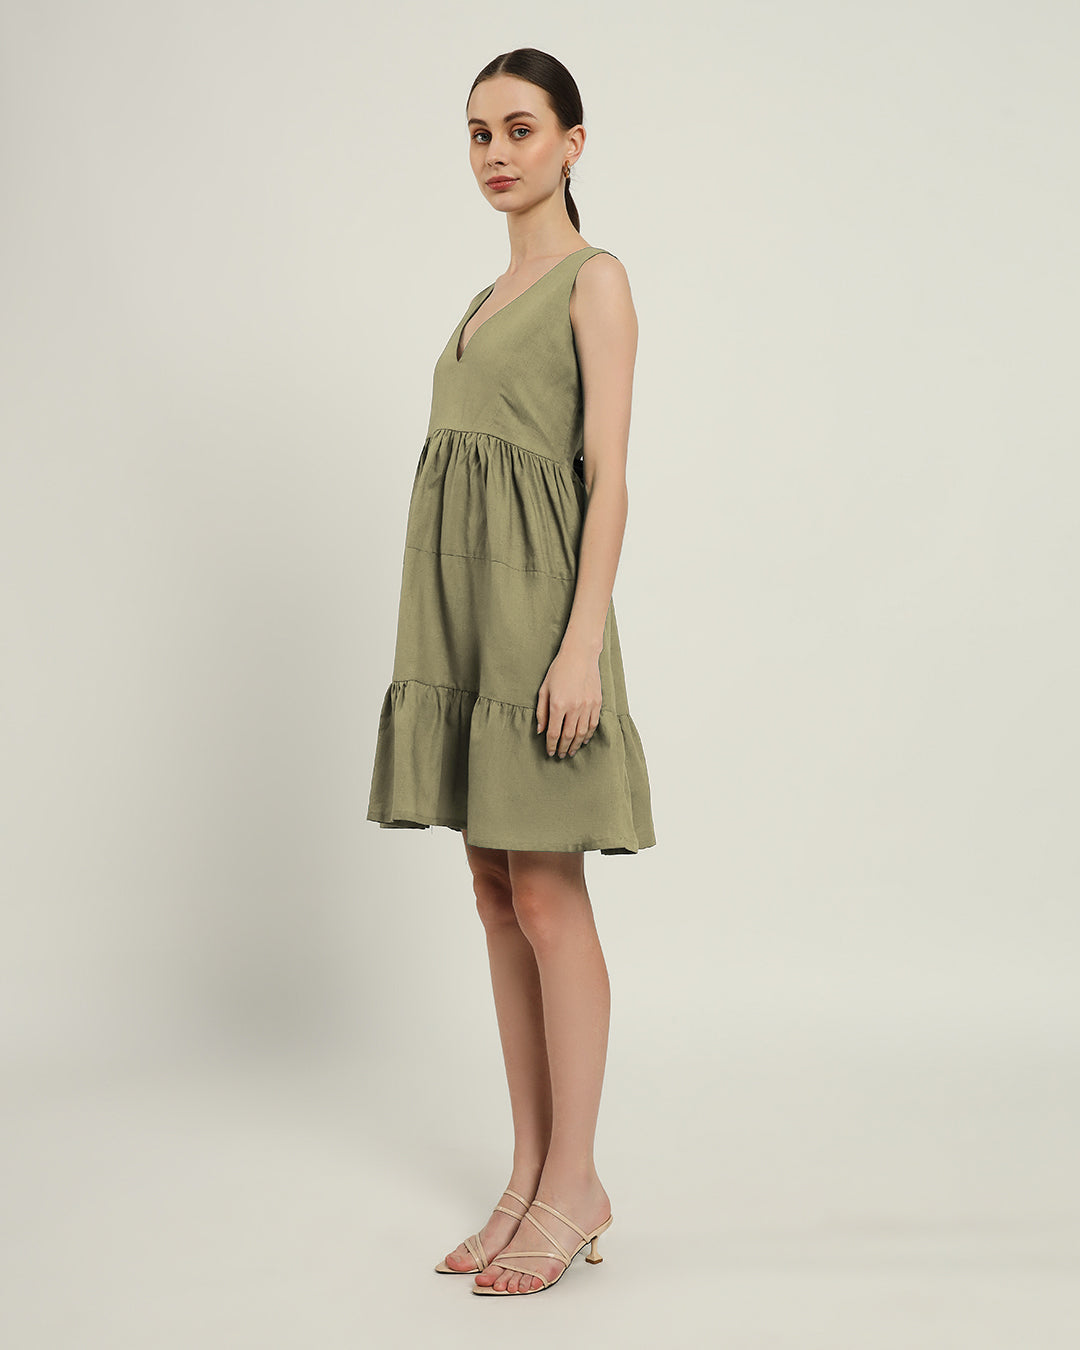 The Minsk Daisy Olive Linen Dress